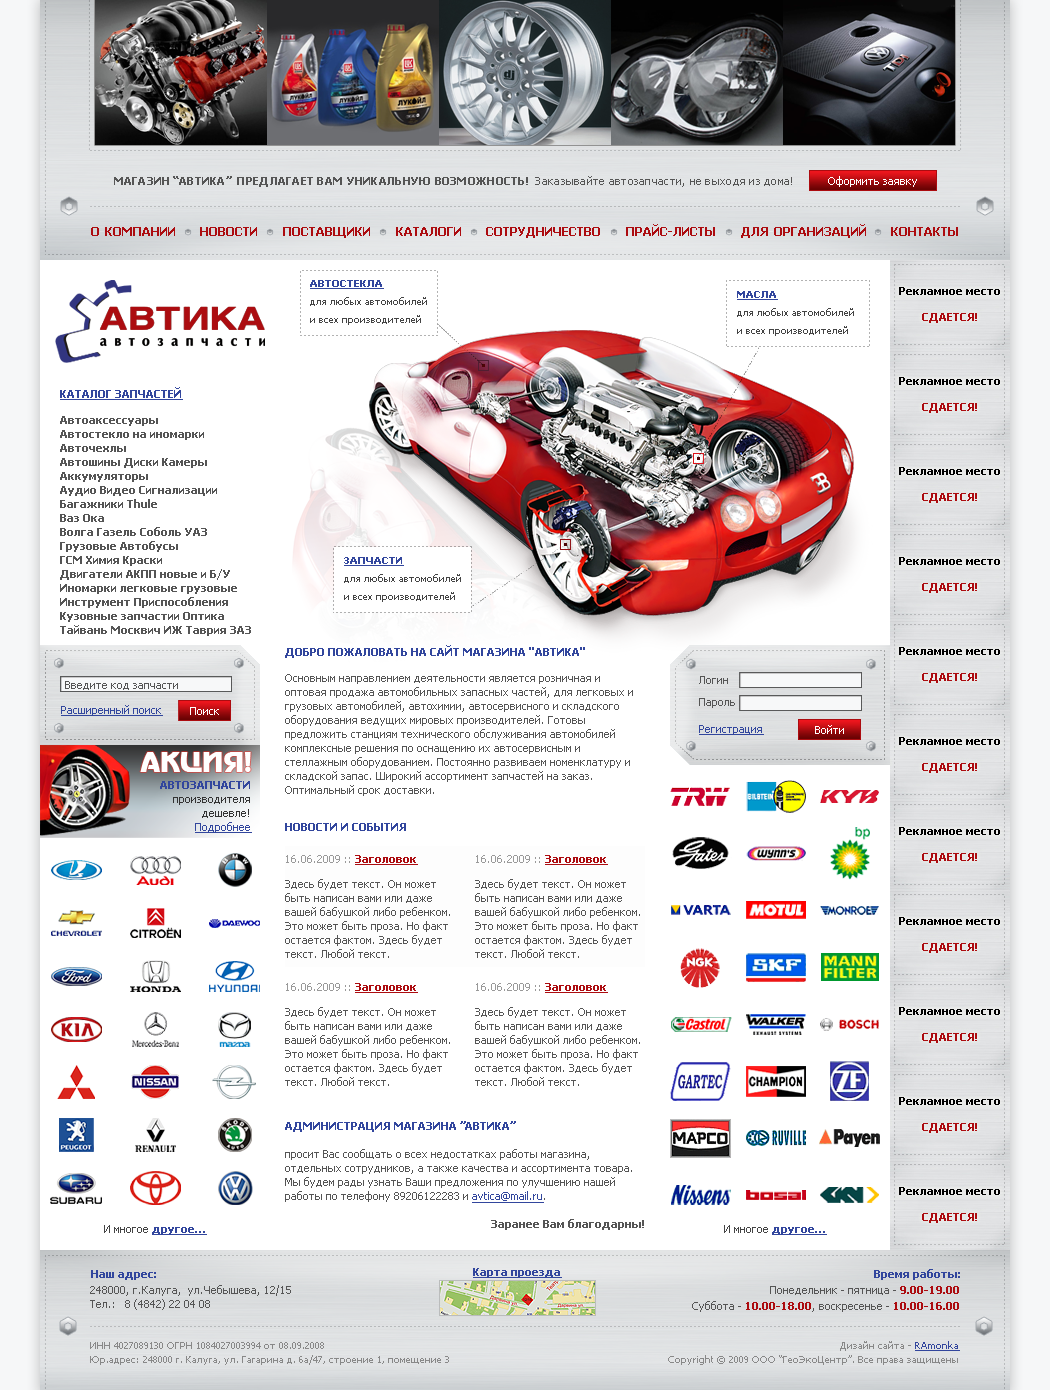 Дизайн сайта и его HTML верстка для интернет-магазина автозапчастей Avtica